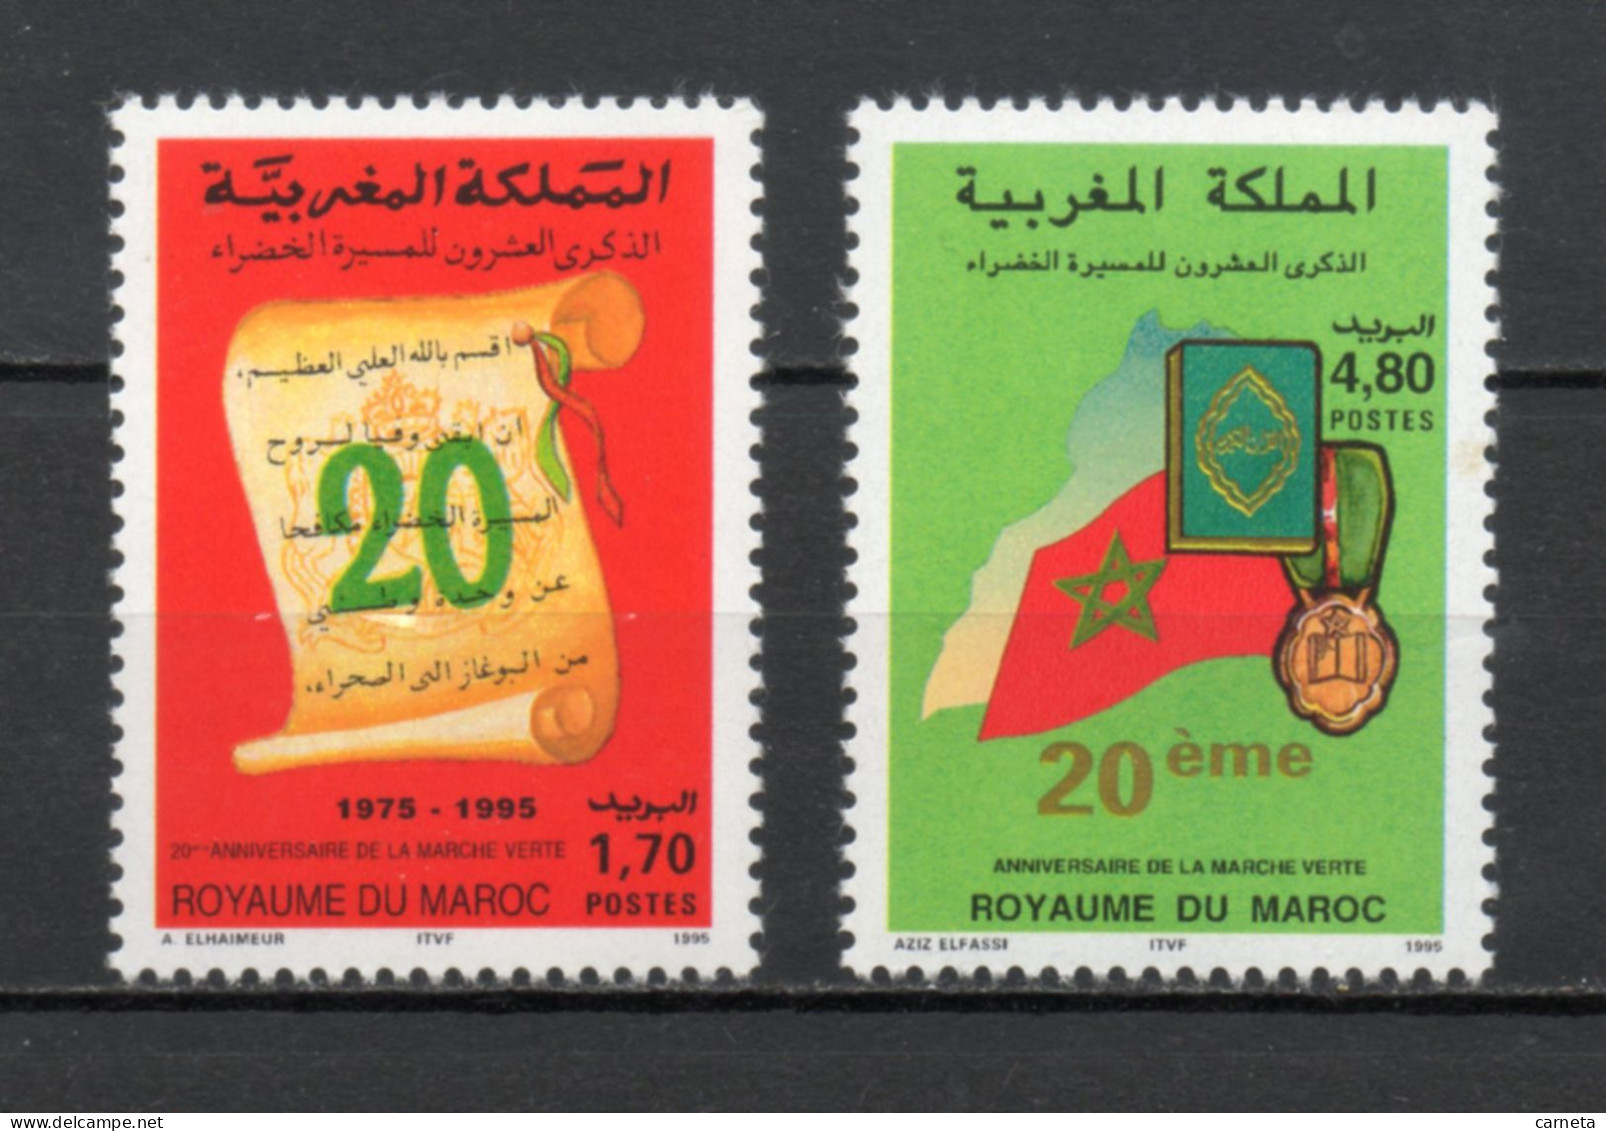 MAROC N°  1184 + 1185    NEUFS SANS CHARNIERE  COTE 2.50€    MARCHE VERTE - Marocco (1956-...)